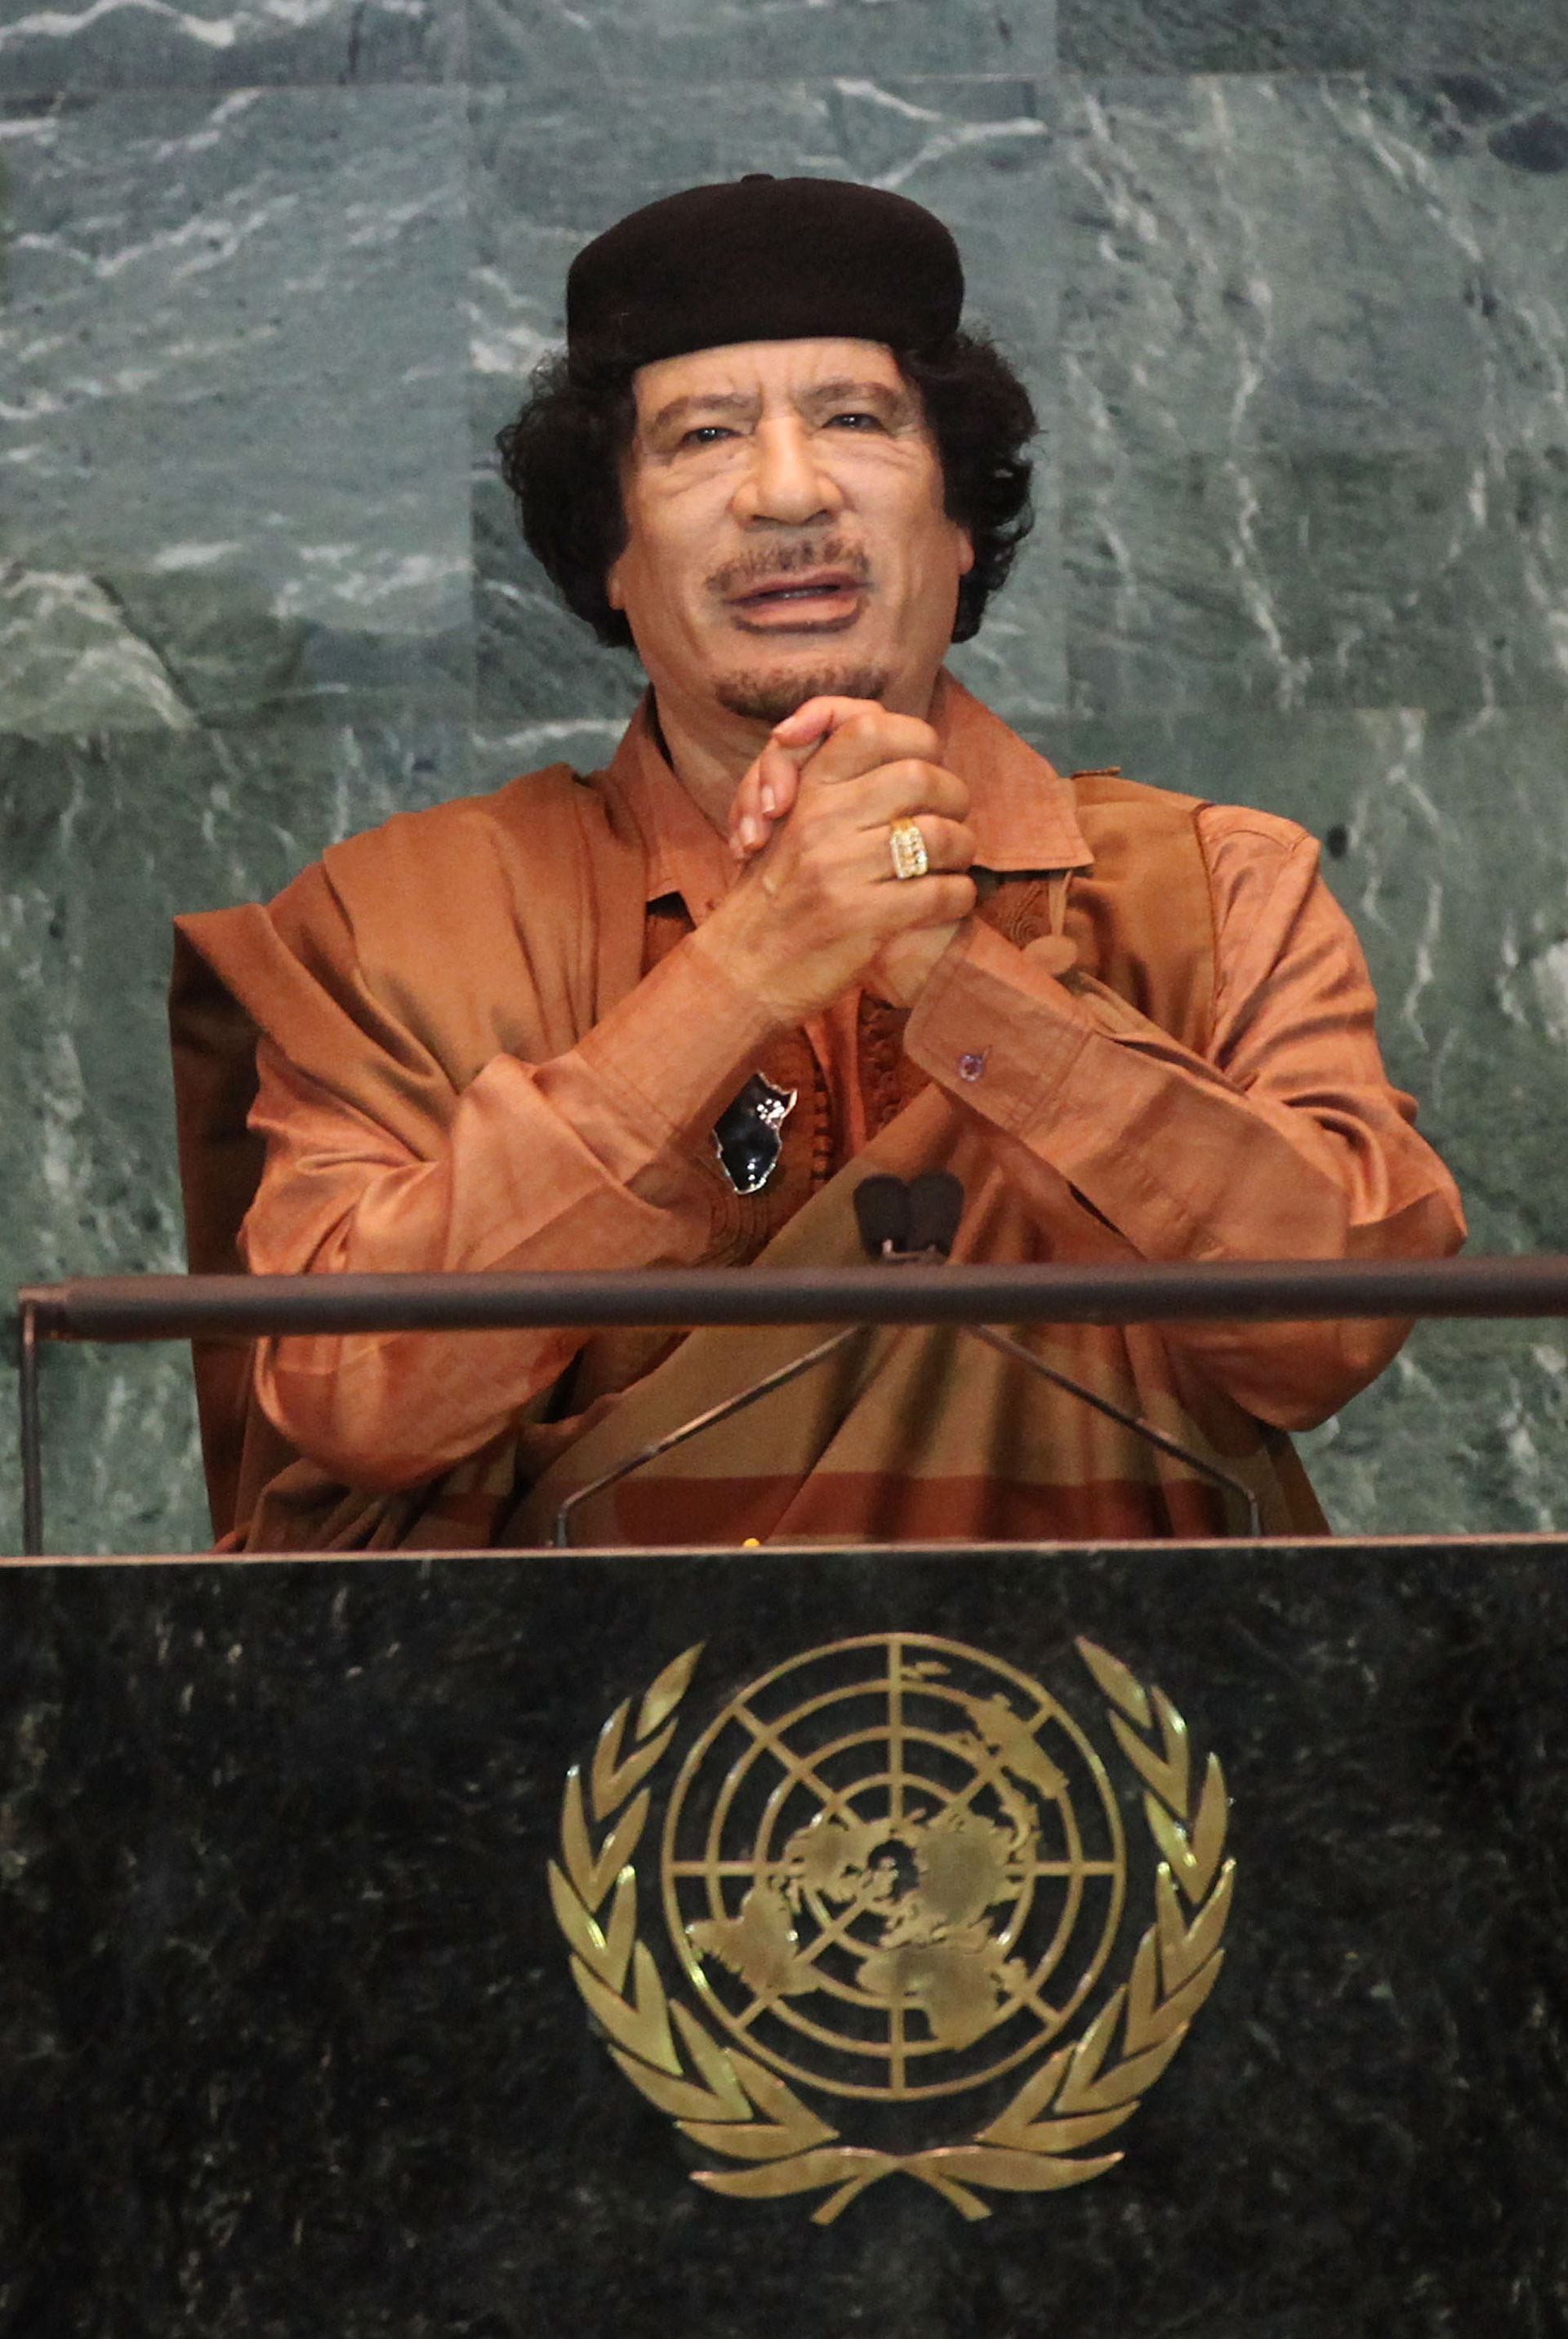 El líder libio pronuncia un discurso ante la Asamblea General de las Naciones Unidas en la sede de la ONU. sede el 23 de septiembre de 2009 en la ciudad de Nueva York. Gadafi no había visitado la ONU desde que asumió el poder en 1969 (Mario Tama/Getty Images)